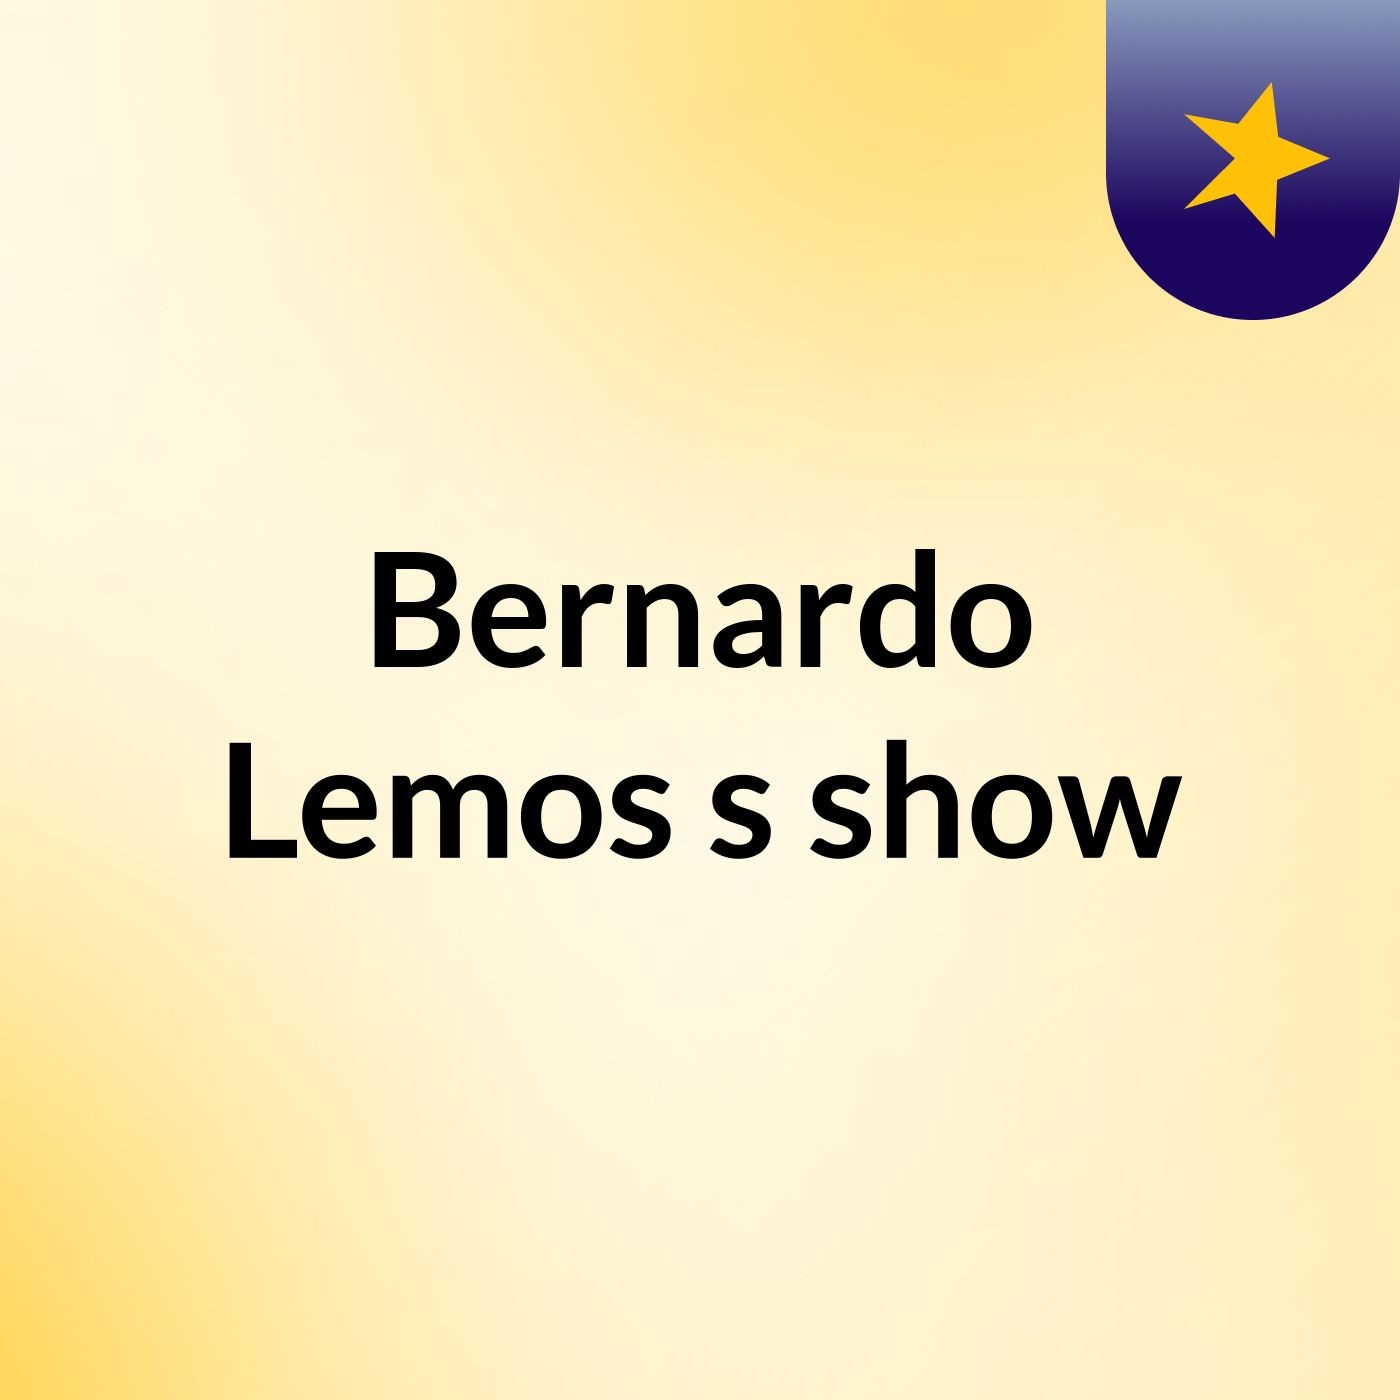 Bernardo Lemos's show